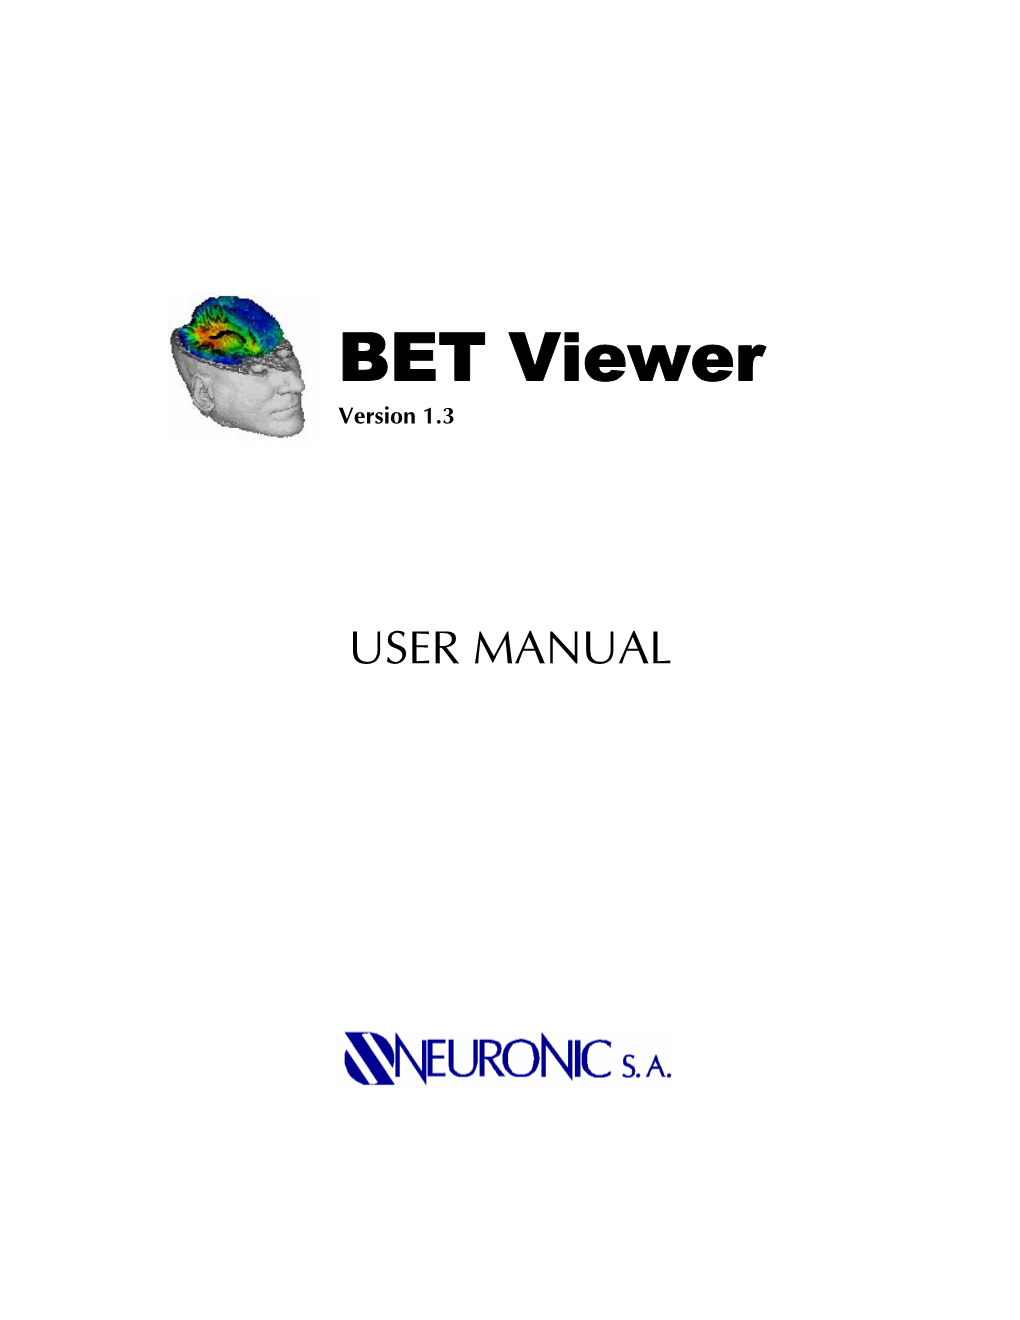 BET Viewer Version 1.3